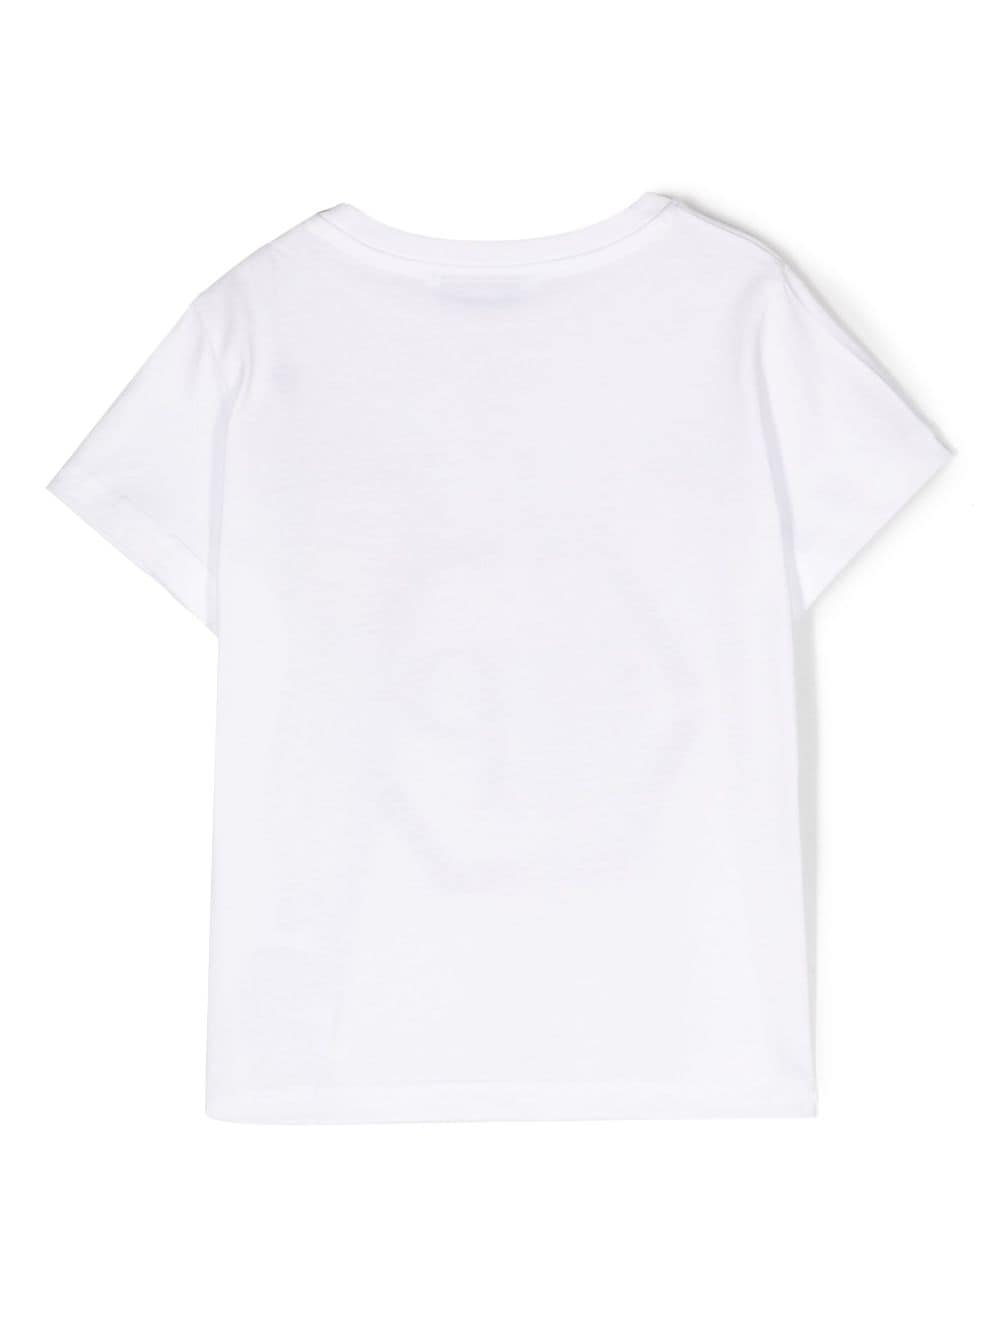 Skull white cotton jersey boy PHILIPP PLEIN t-shirt | Carofiglio Junior